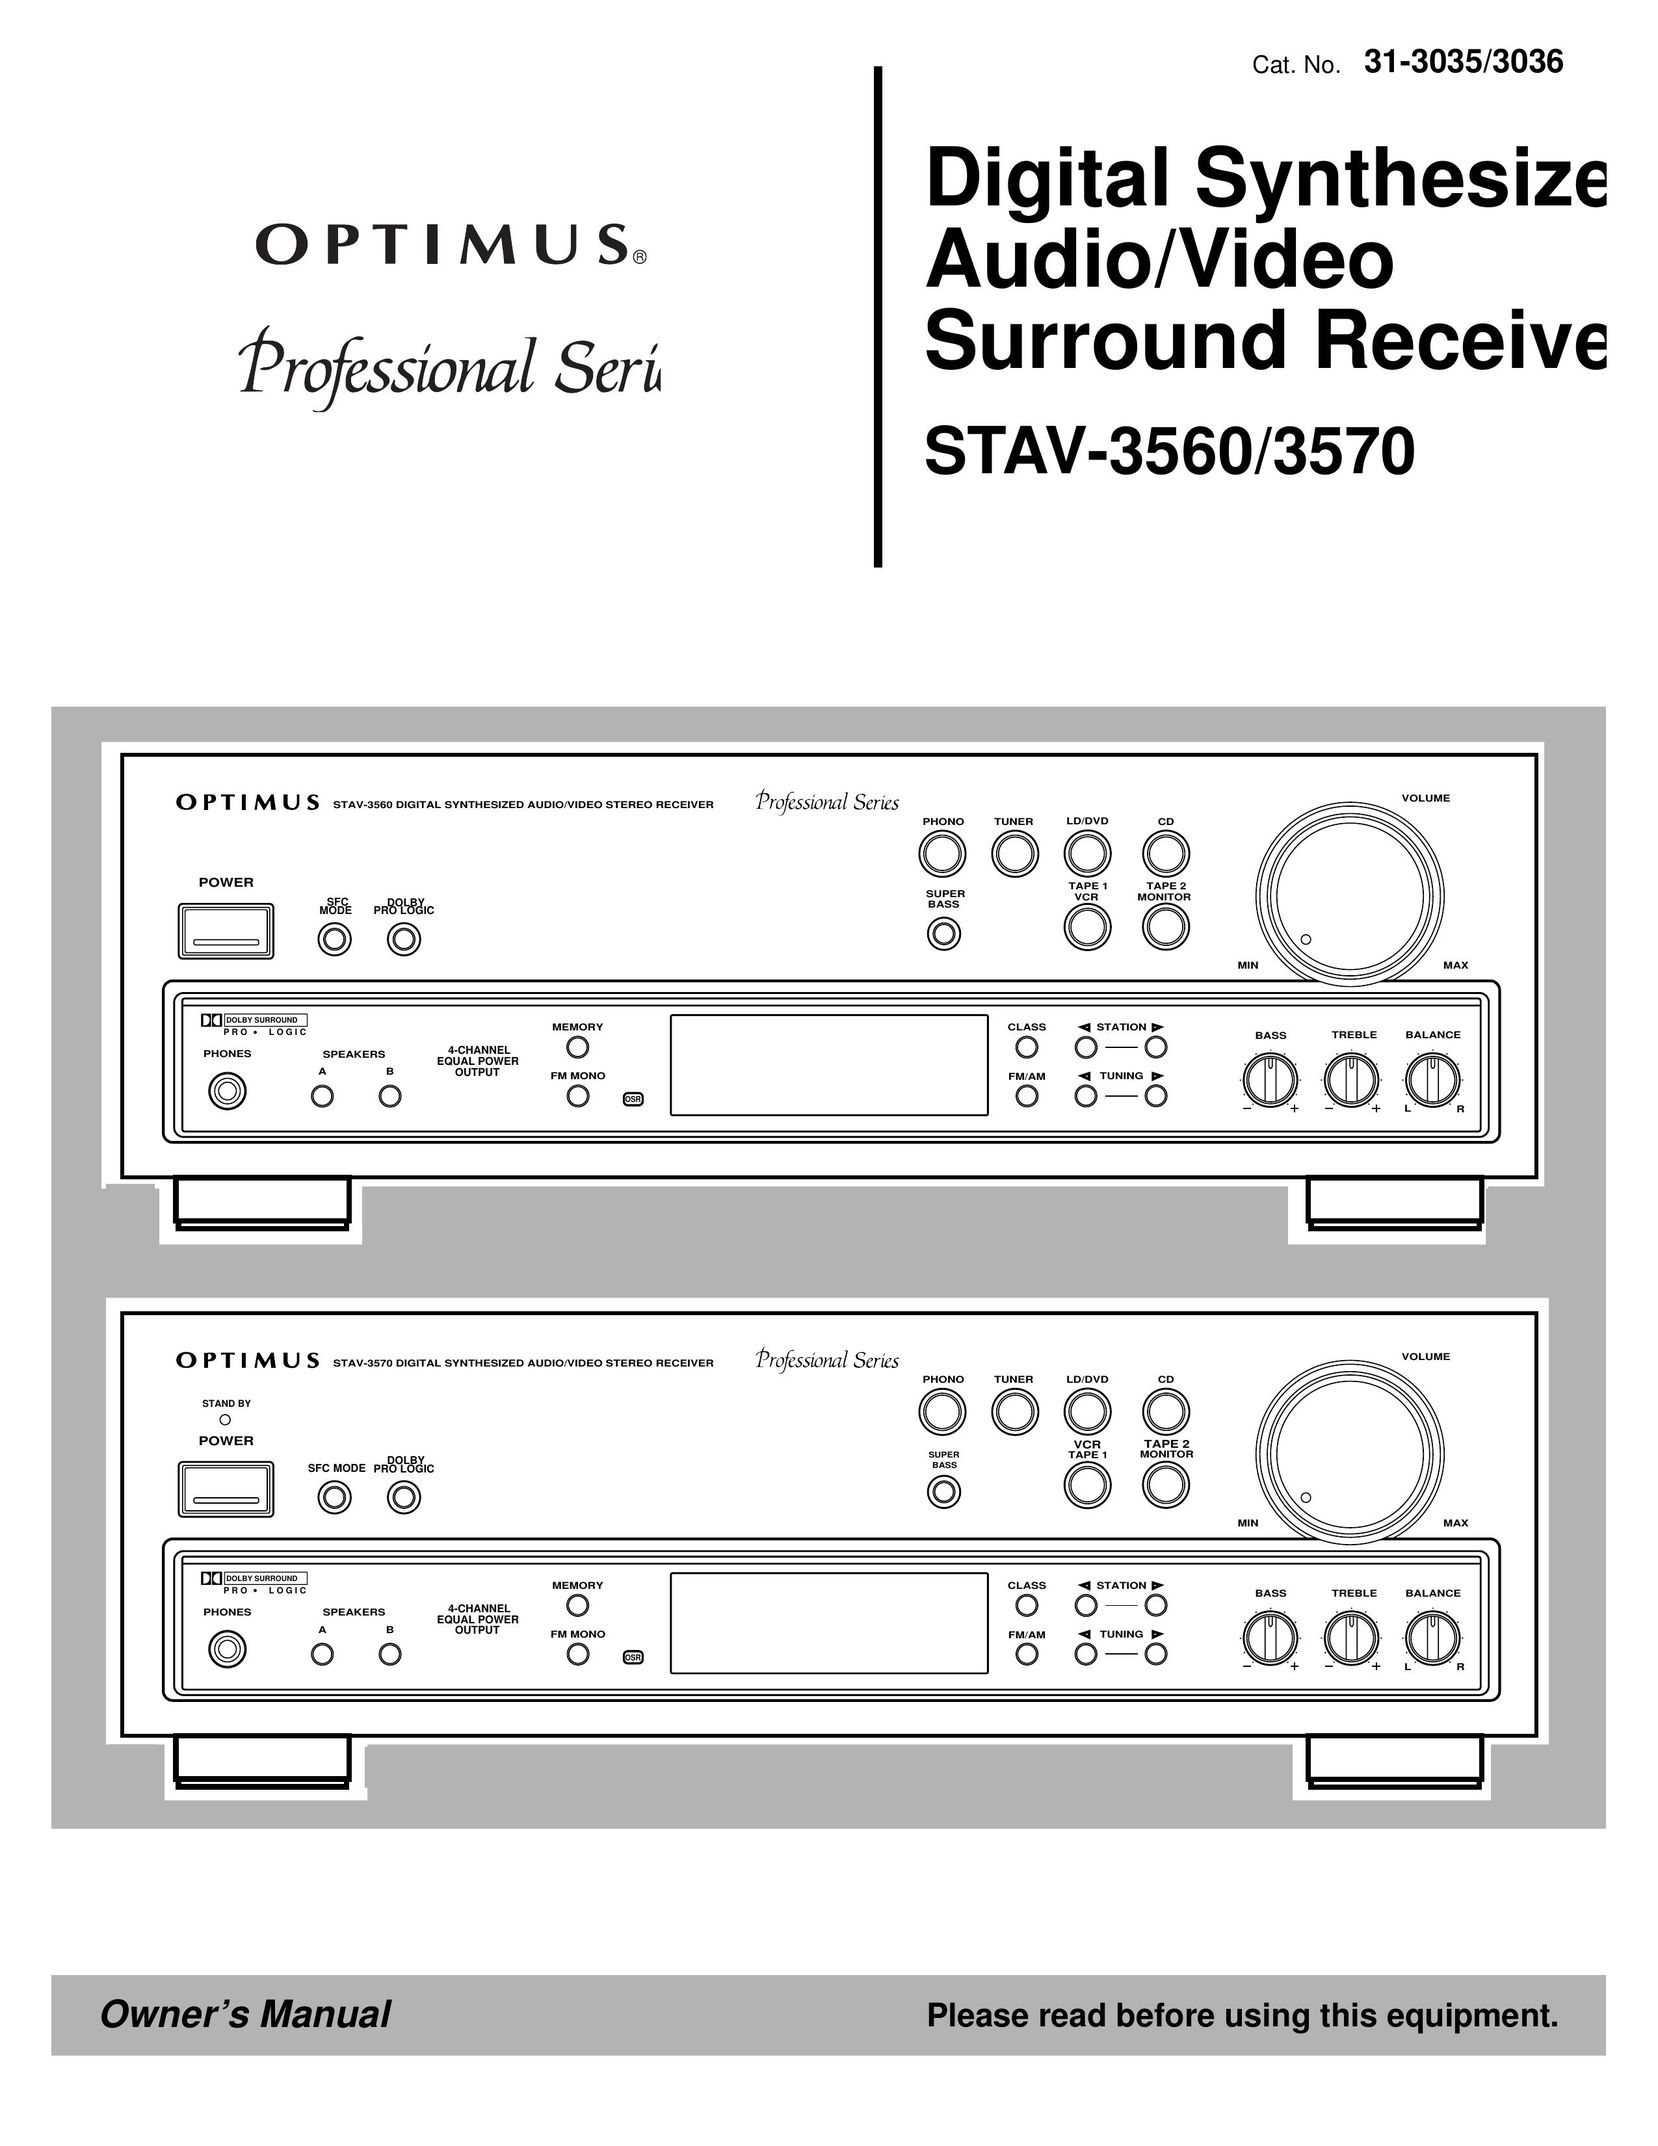 Optimus STAV-3570 Stereo Receiver User Manual